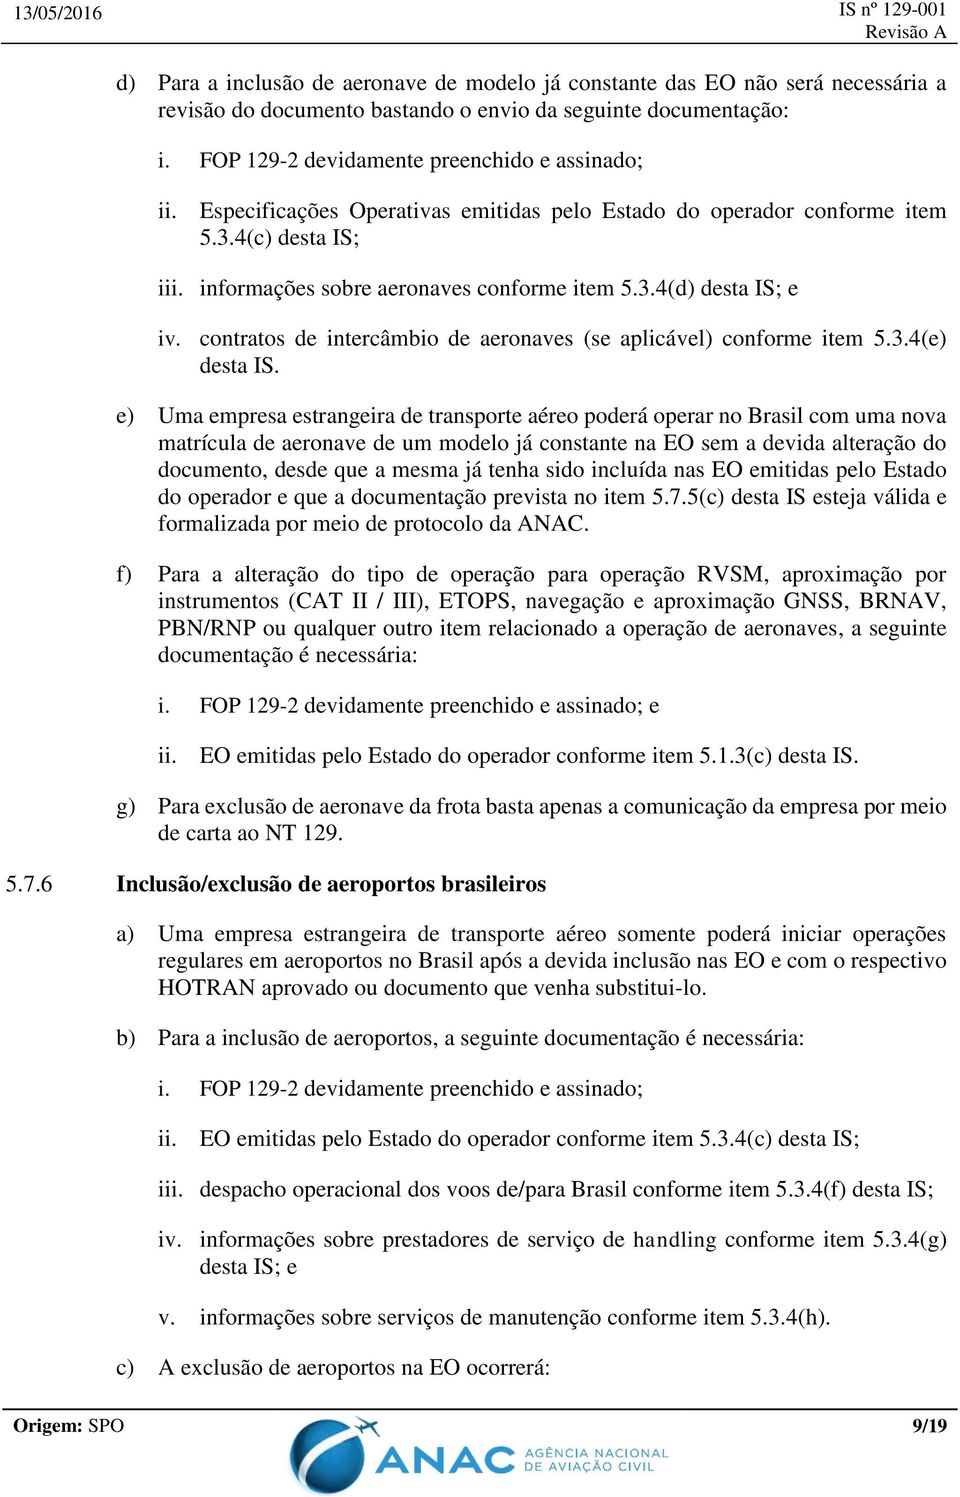 contratos de intercâmbio de aeronaves (se aplicável) conforme item 5.3.4(e) desta IS.